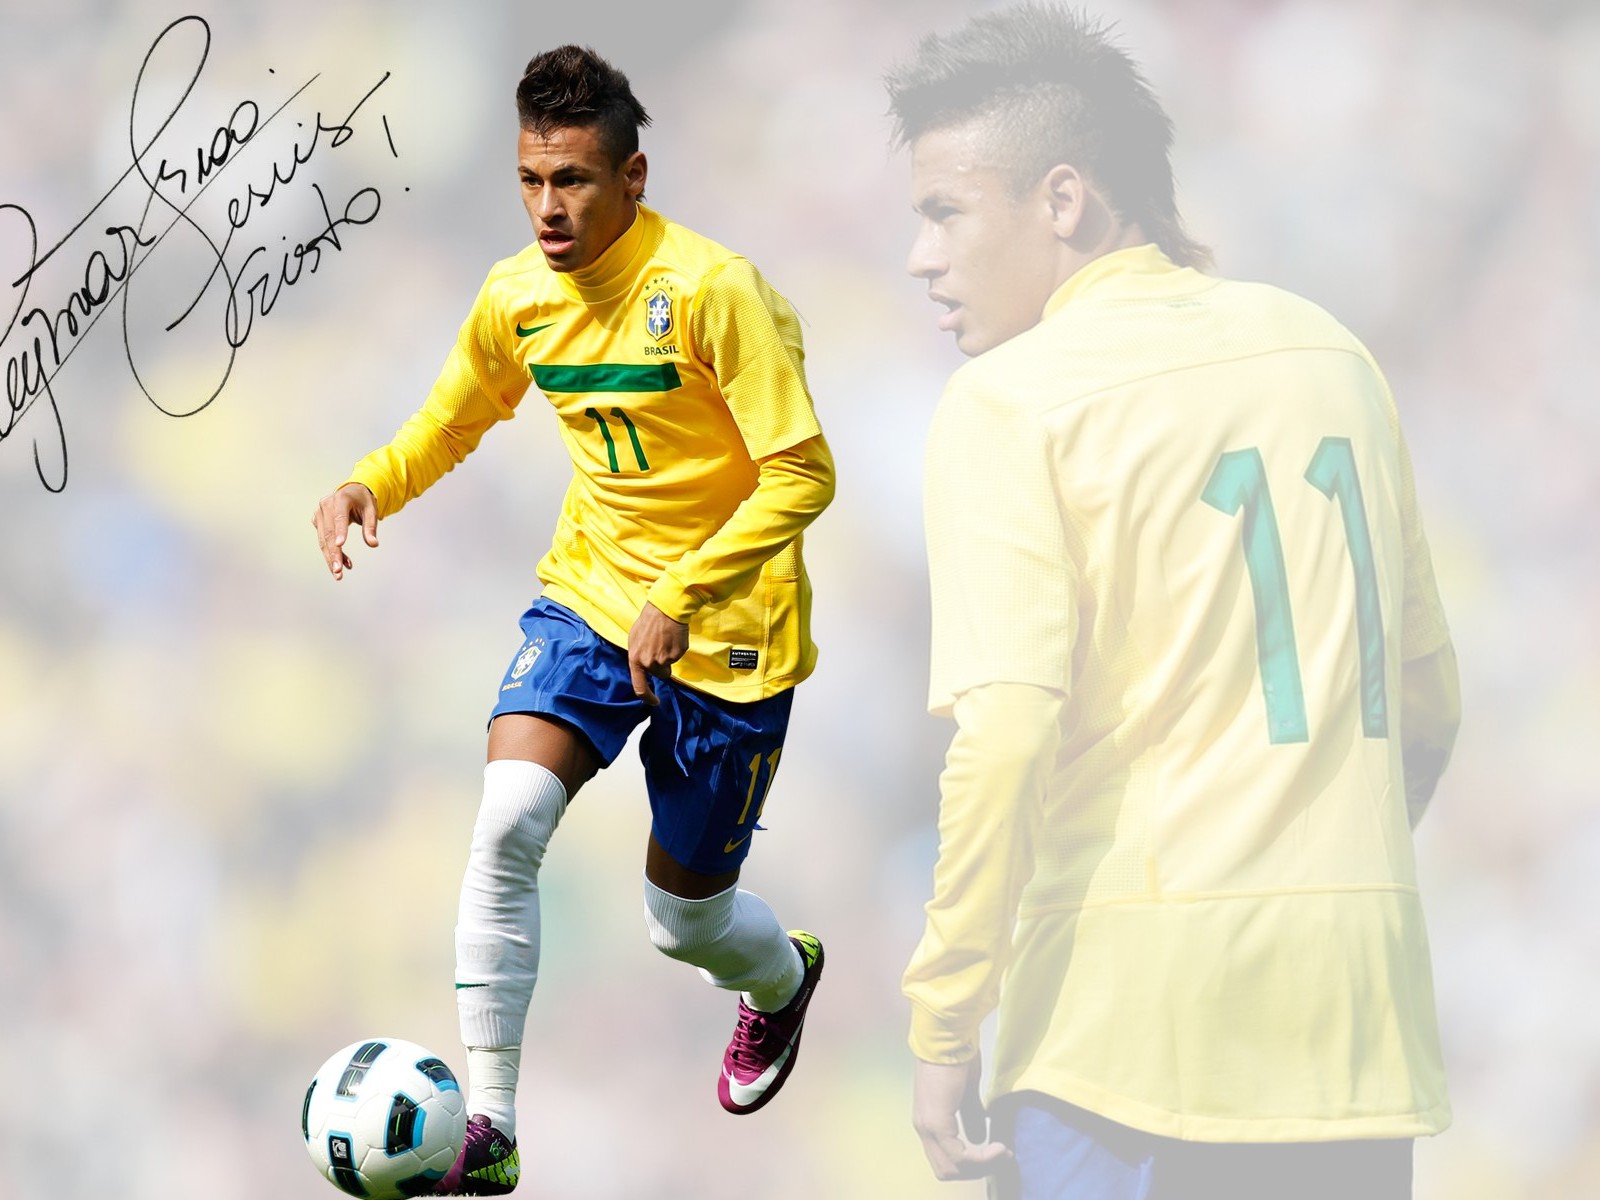 Neymar De Silva Bio And Photos